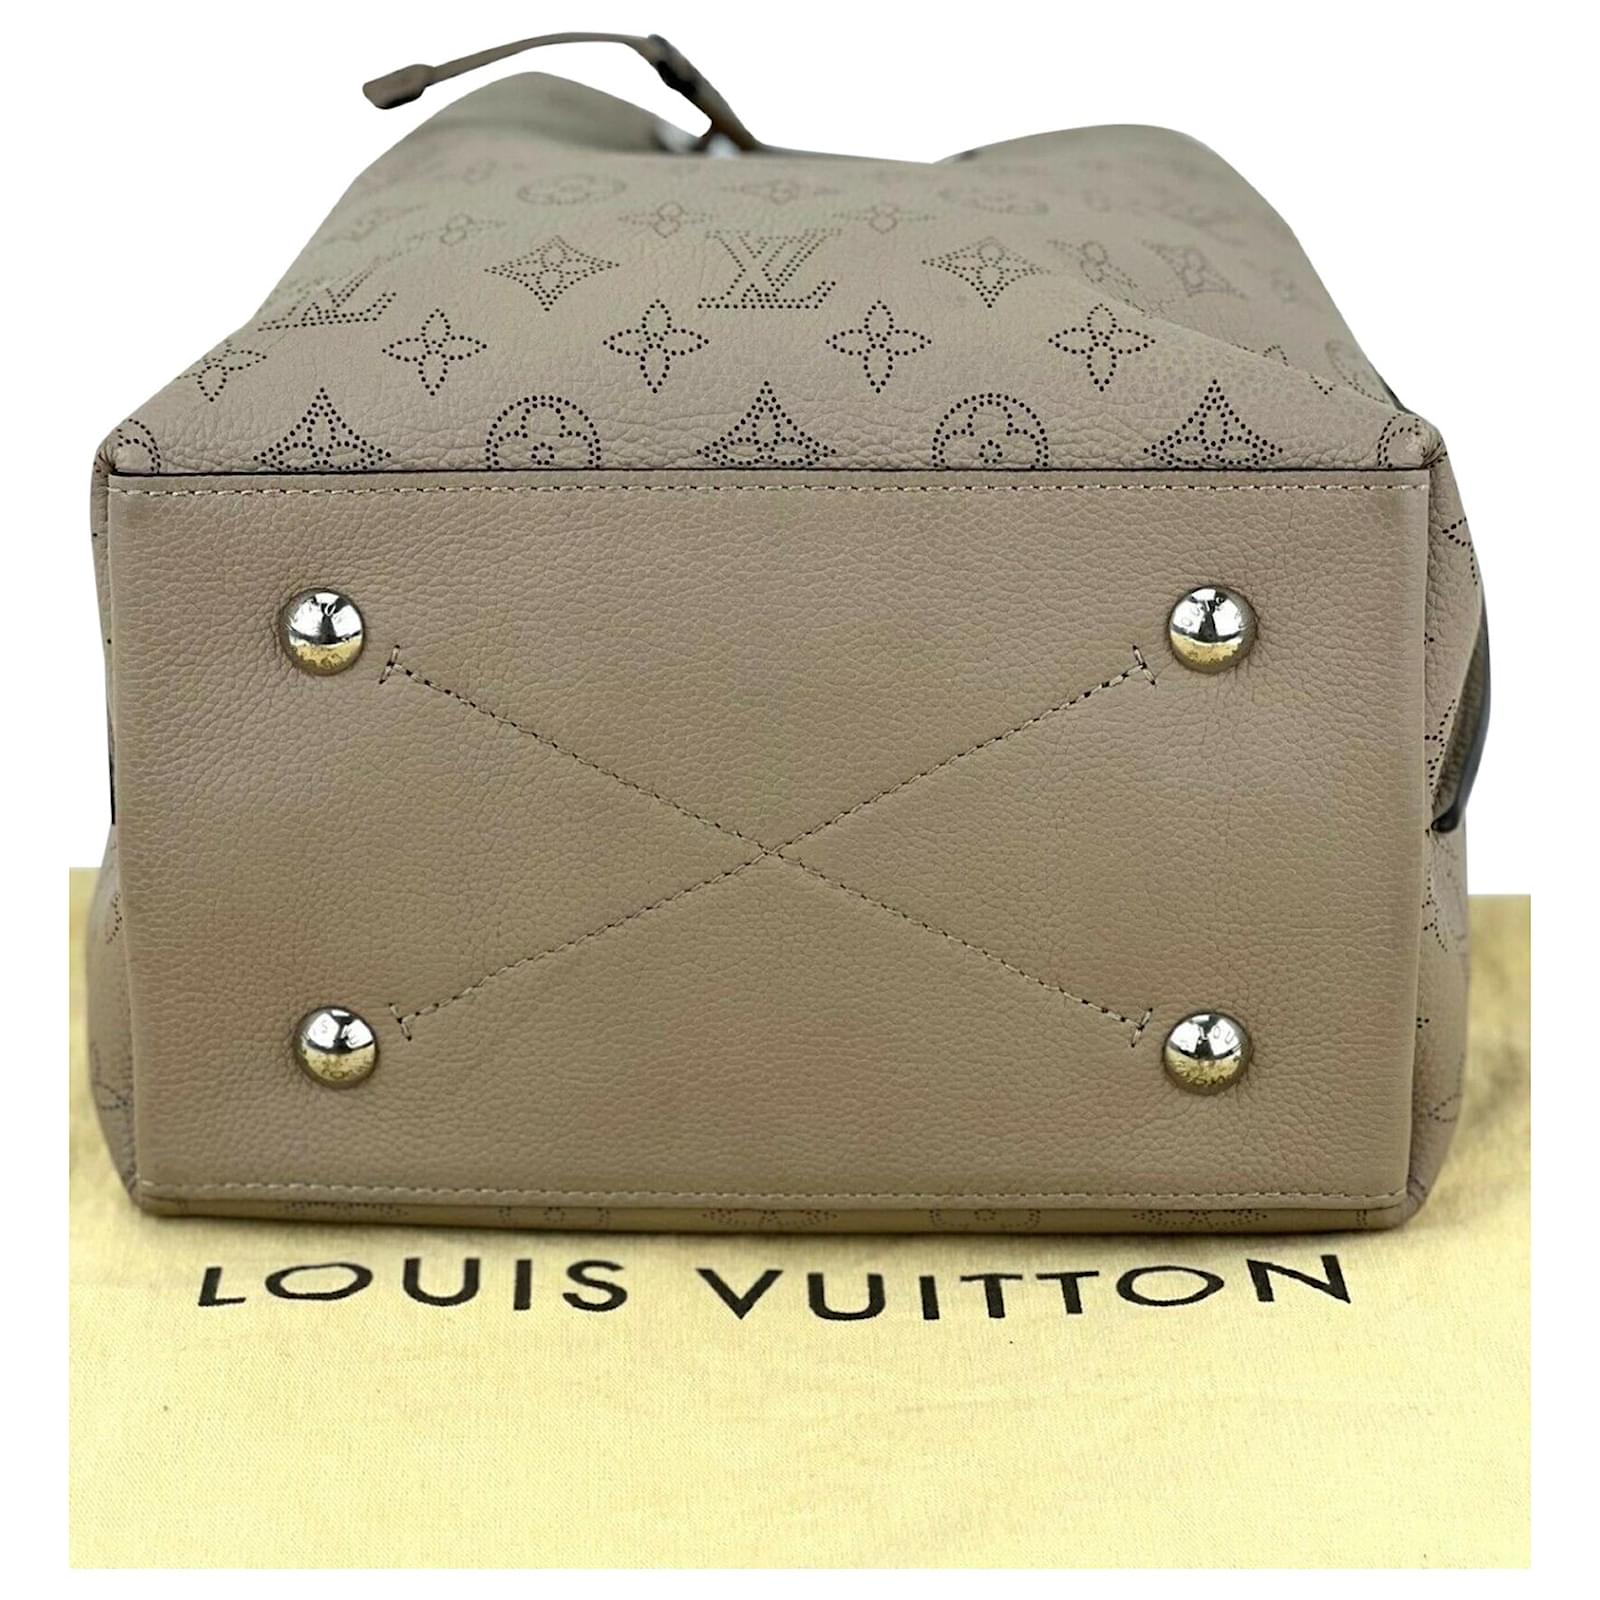 Louis Vuitton Tasche Muria Mahina schwarz silber mit braunem